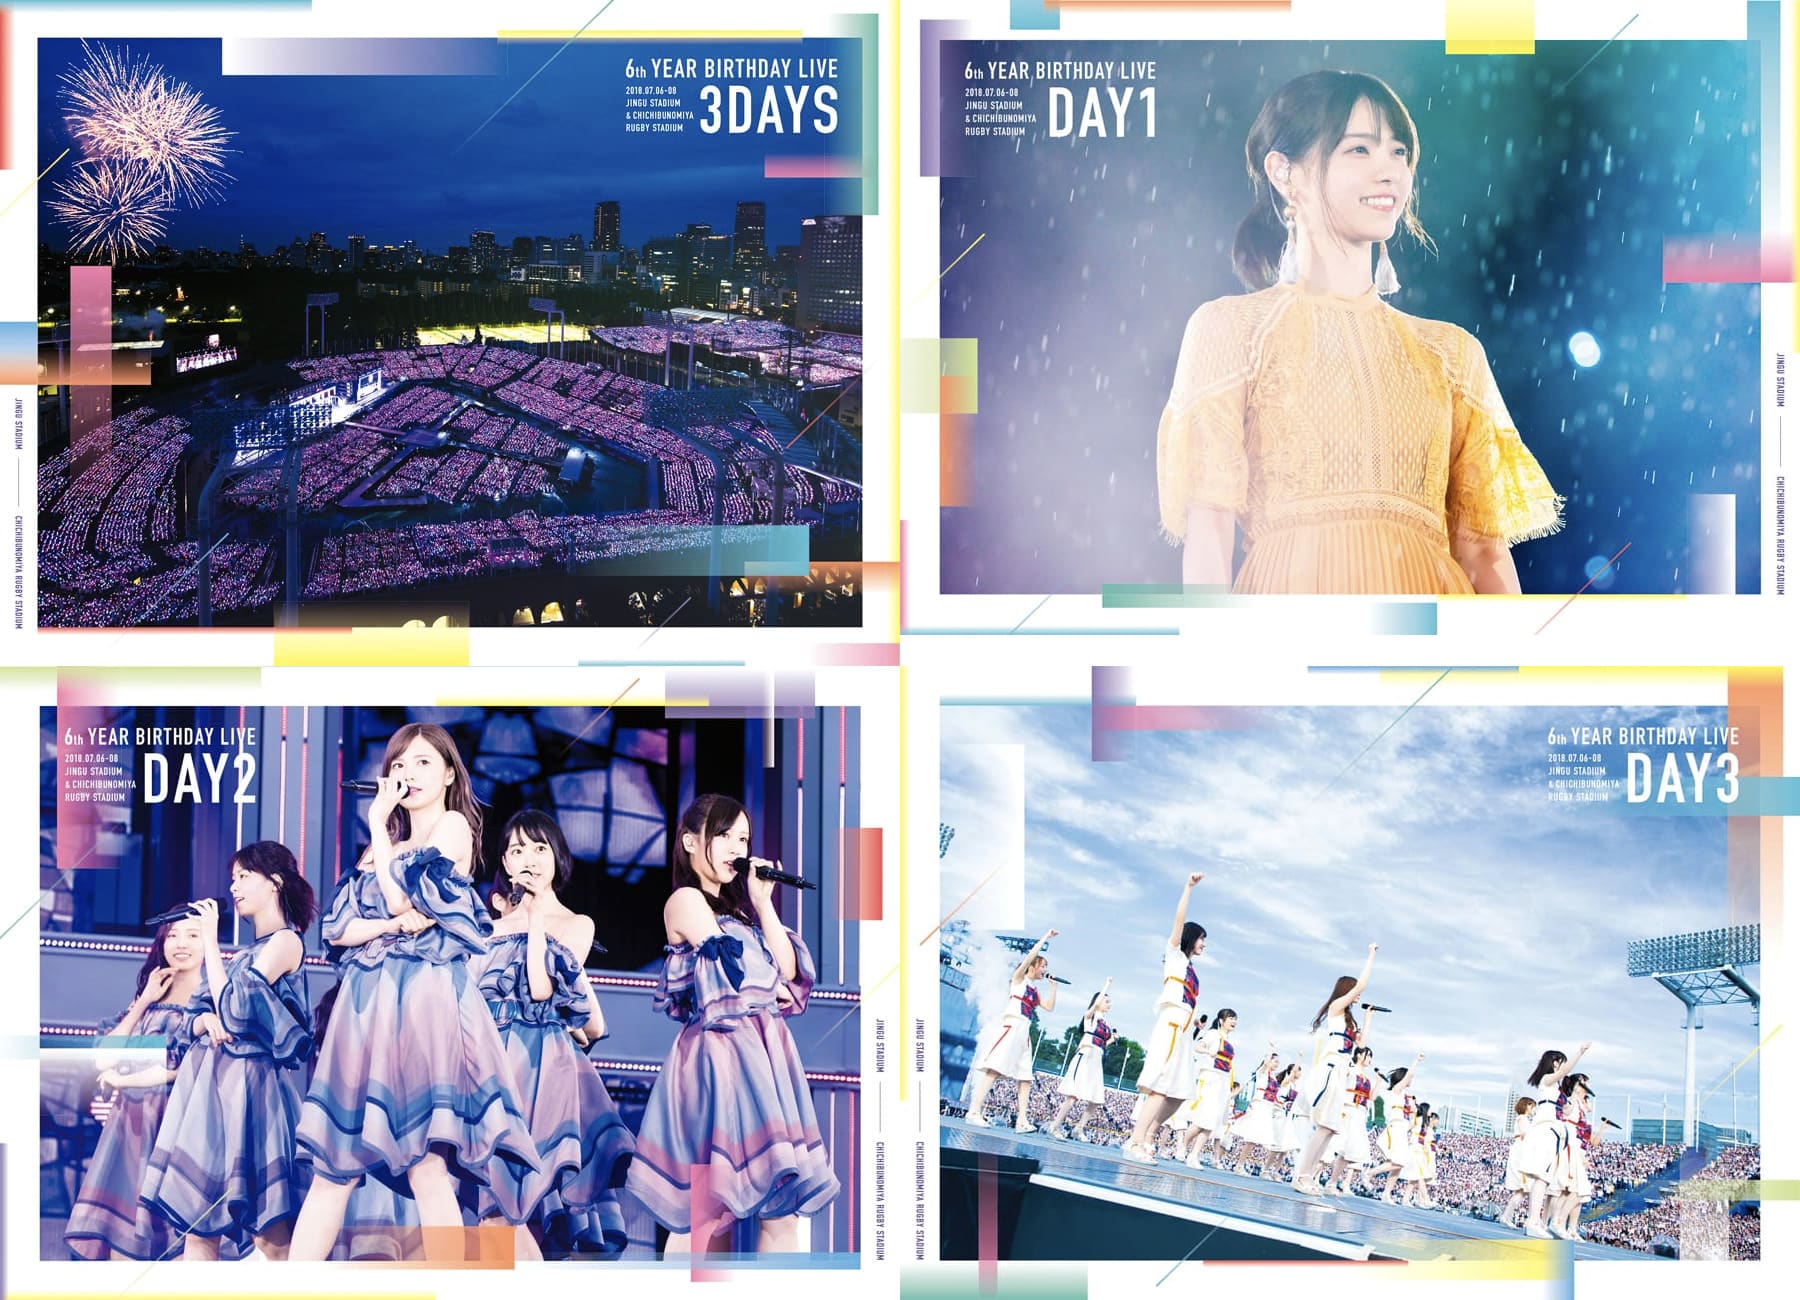 乃木坂46 6th YEAR BIRTHDAY LIVE DVD 完全生産限定盤 - ミュージック